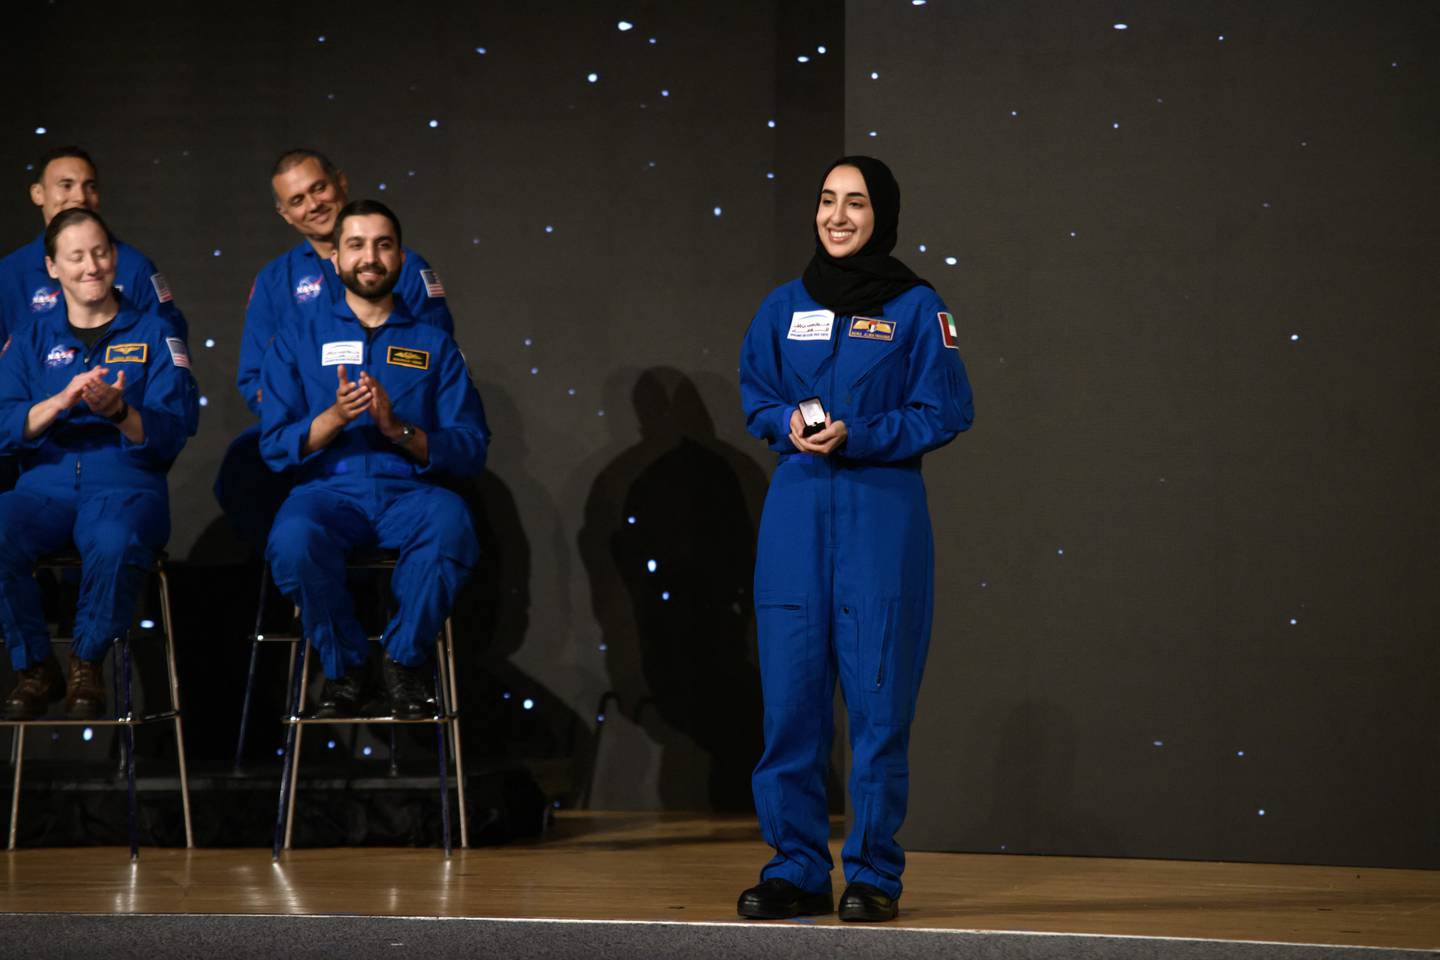 Debido a su fe musulmana, AlMatrooshi lleva un hijab, y la NASA diseñó una solución especial para cubrir su cabello dentro del traje espacial, cosiendo un hijab improvisado para mantener su cabello cubierto durante la preparación y el uso del equipo espacial.